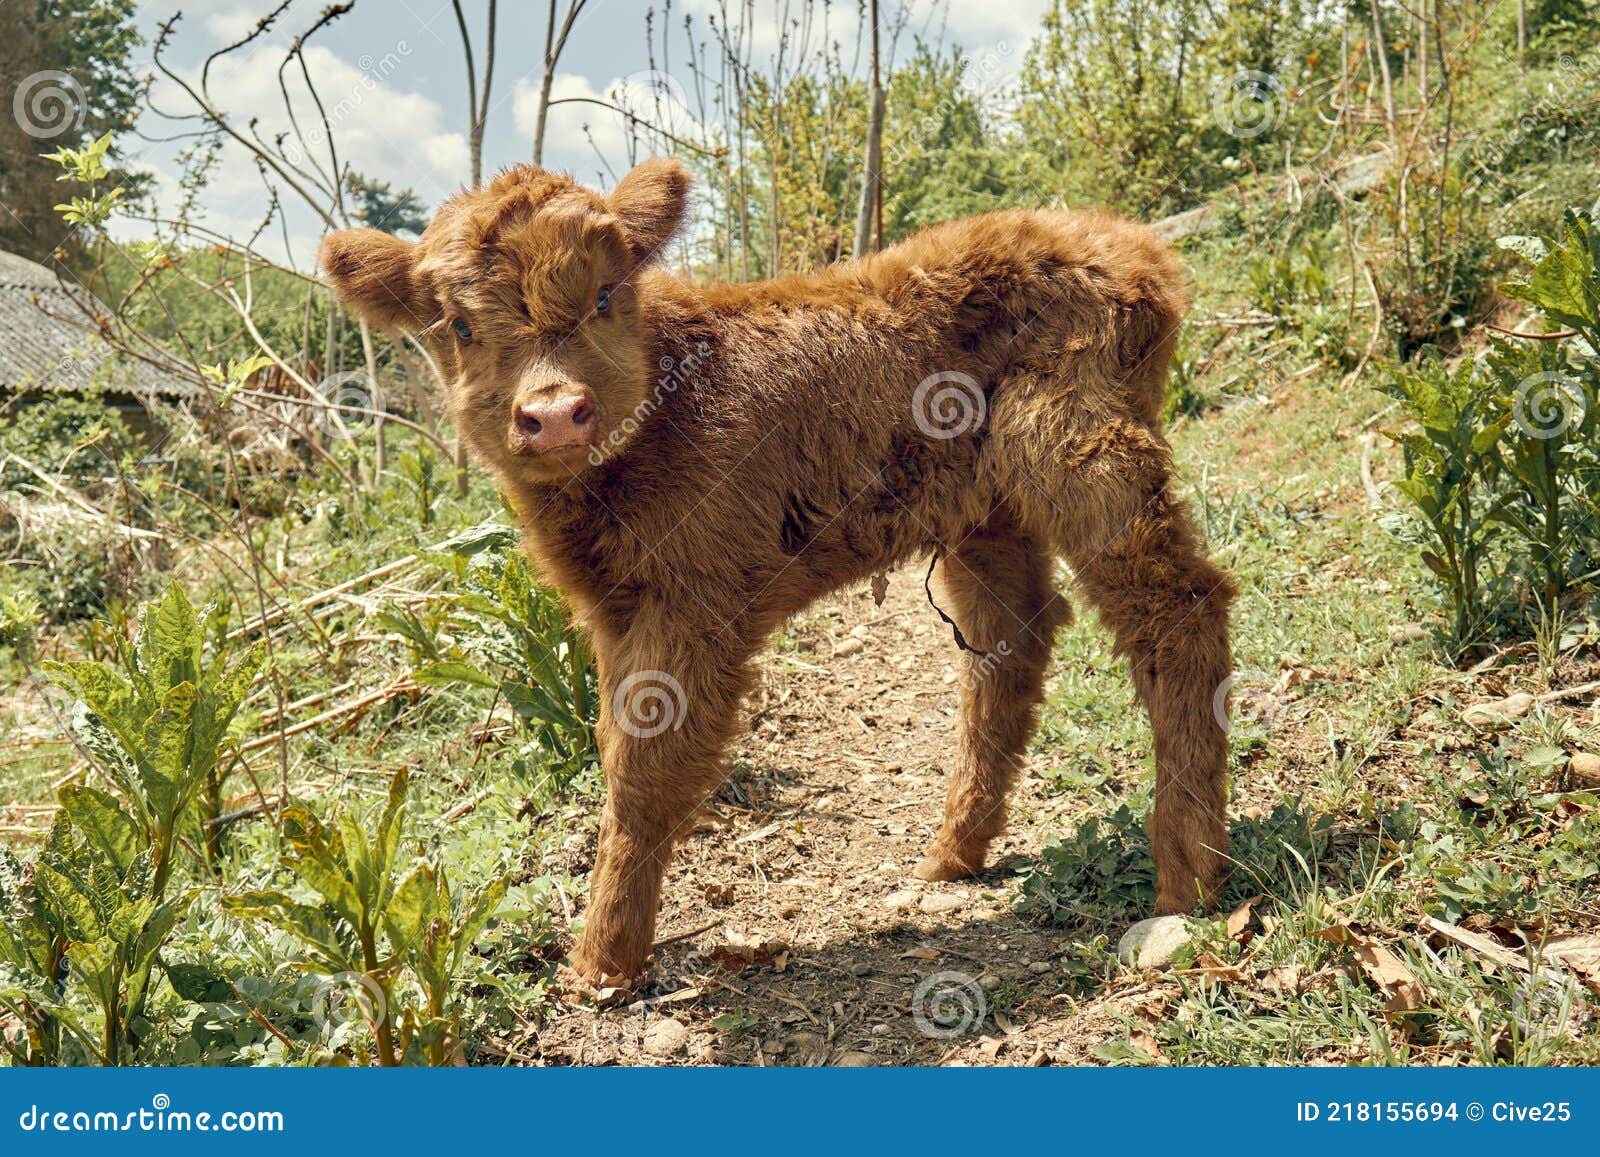 newborn highland calf